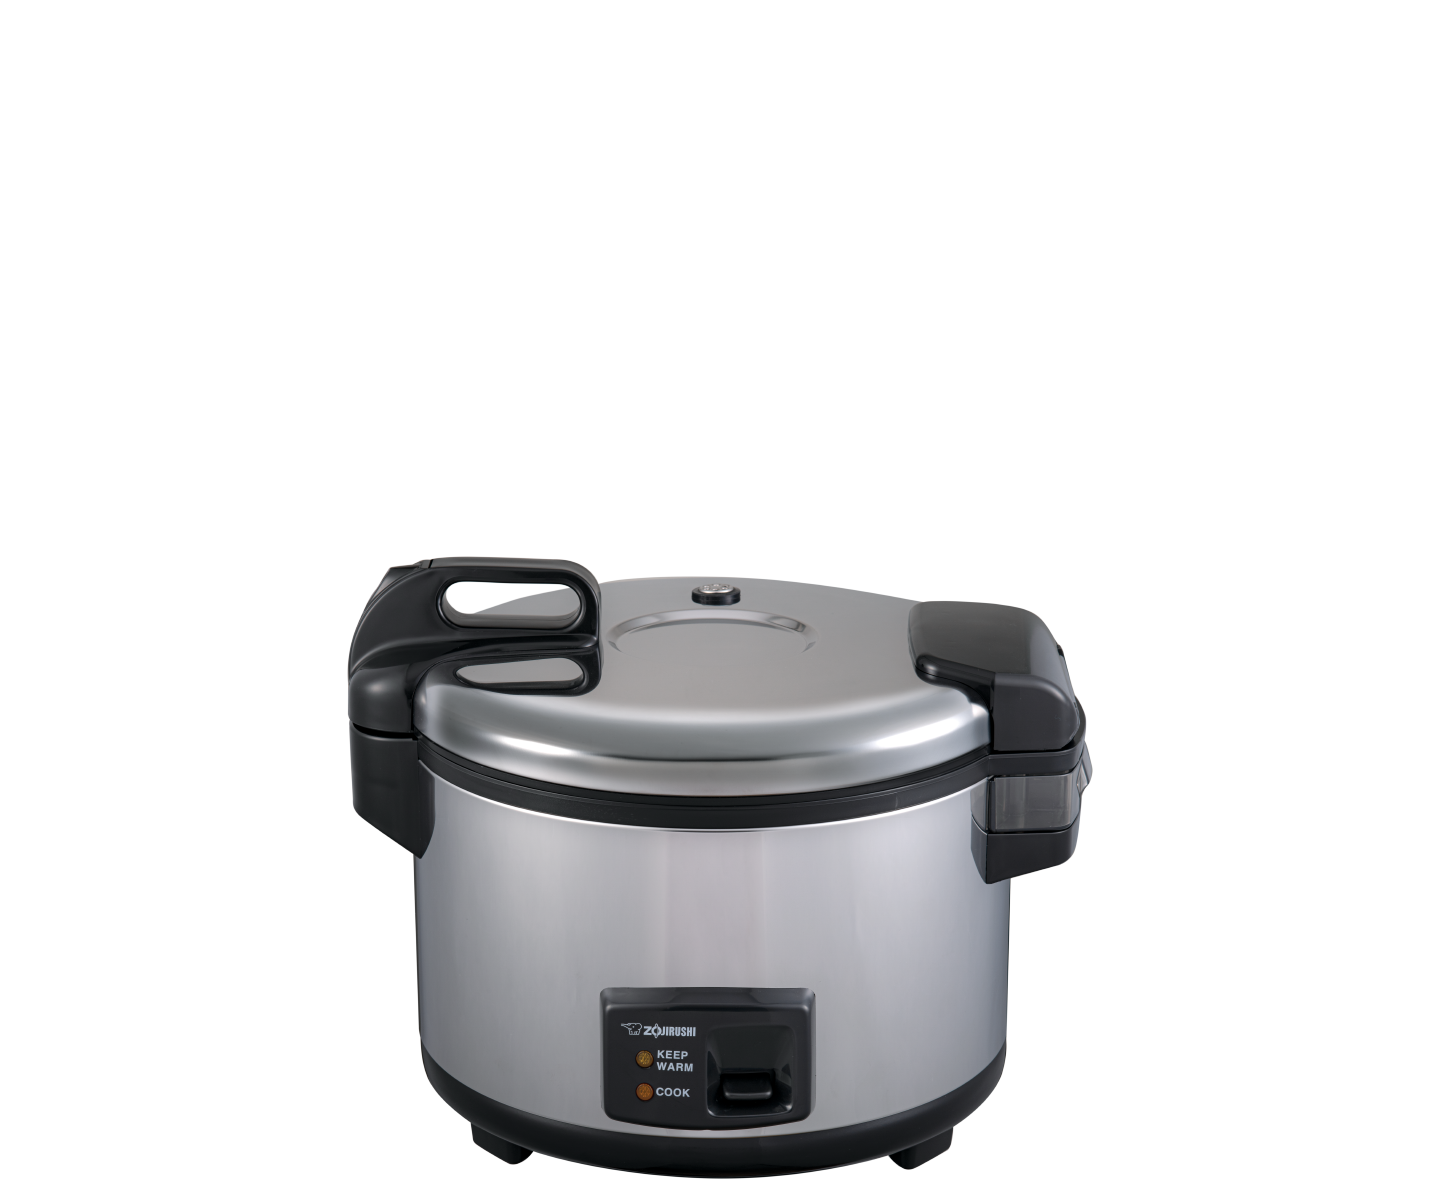 Original new rice cooker inner pot for ZOJIRUSHI B251 NS-LAH05C NS